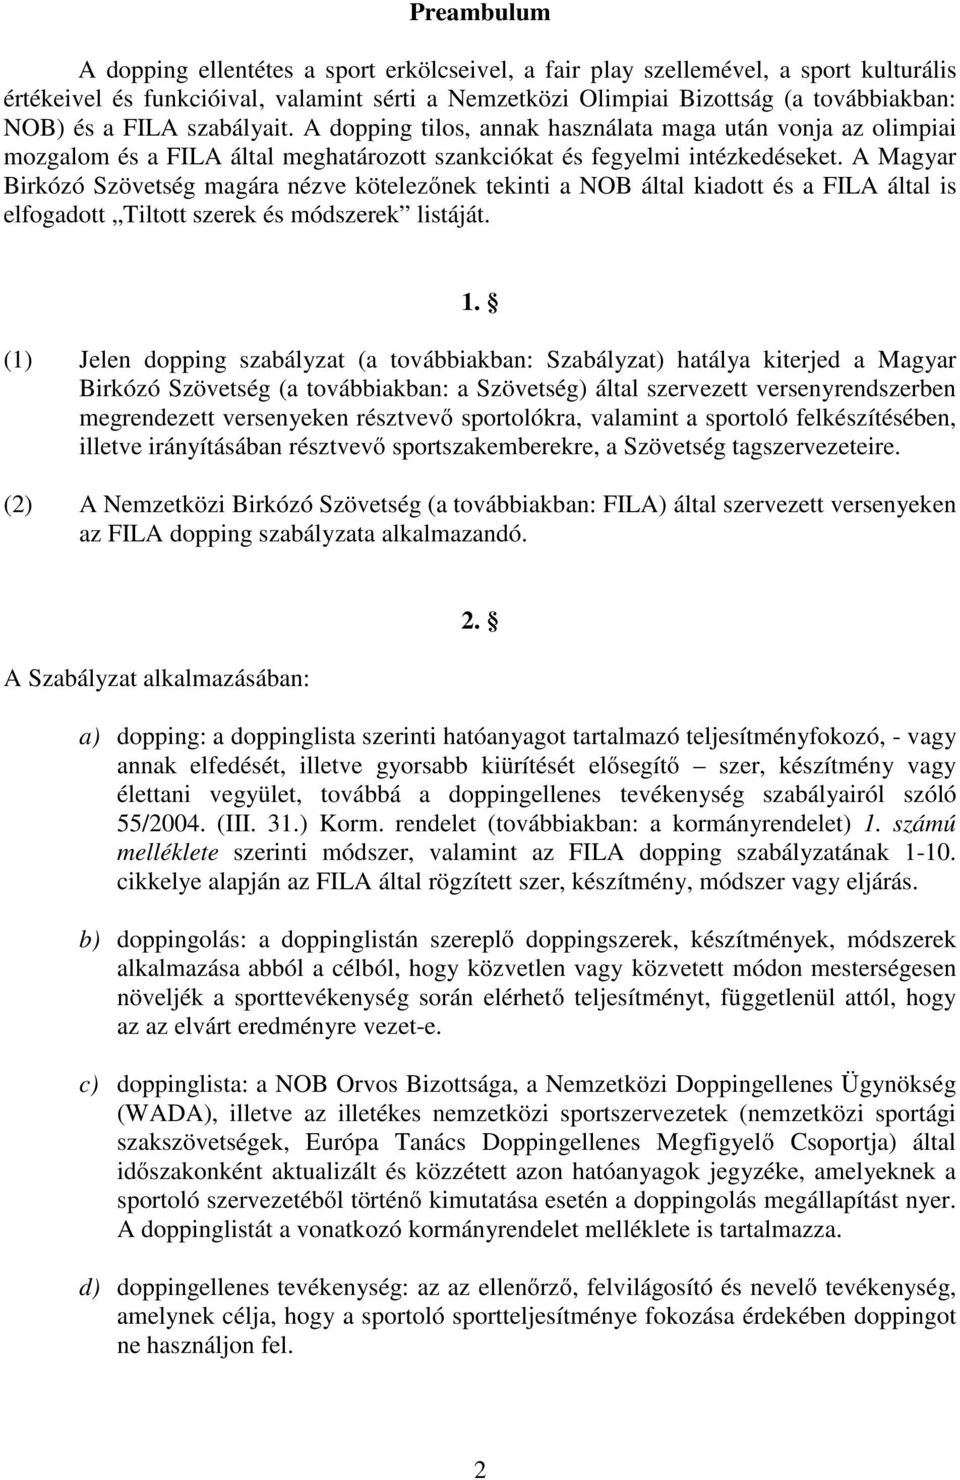 A Magyar Birkózó Szövetség magára nézve kötelezőnek tekinti a NOB által kiadott és a FILA által is elfogadott Tiltott szerek és módszerek listáját. 1.